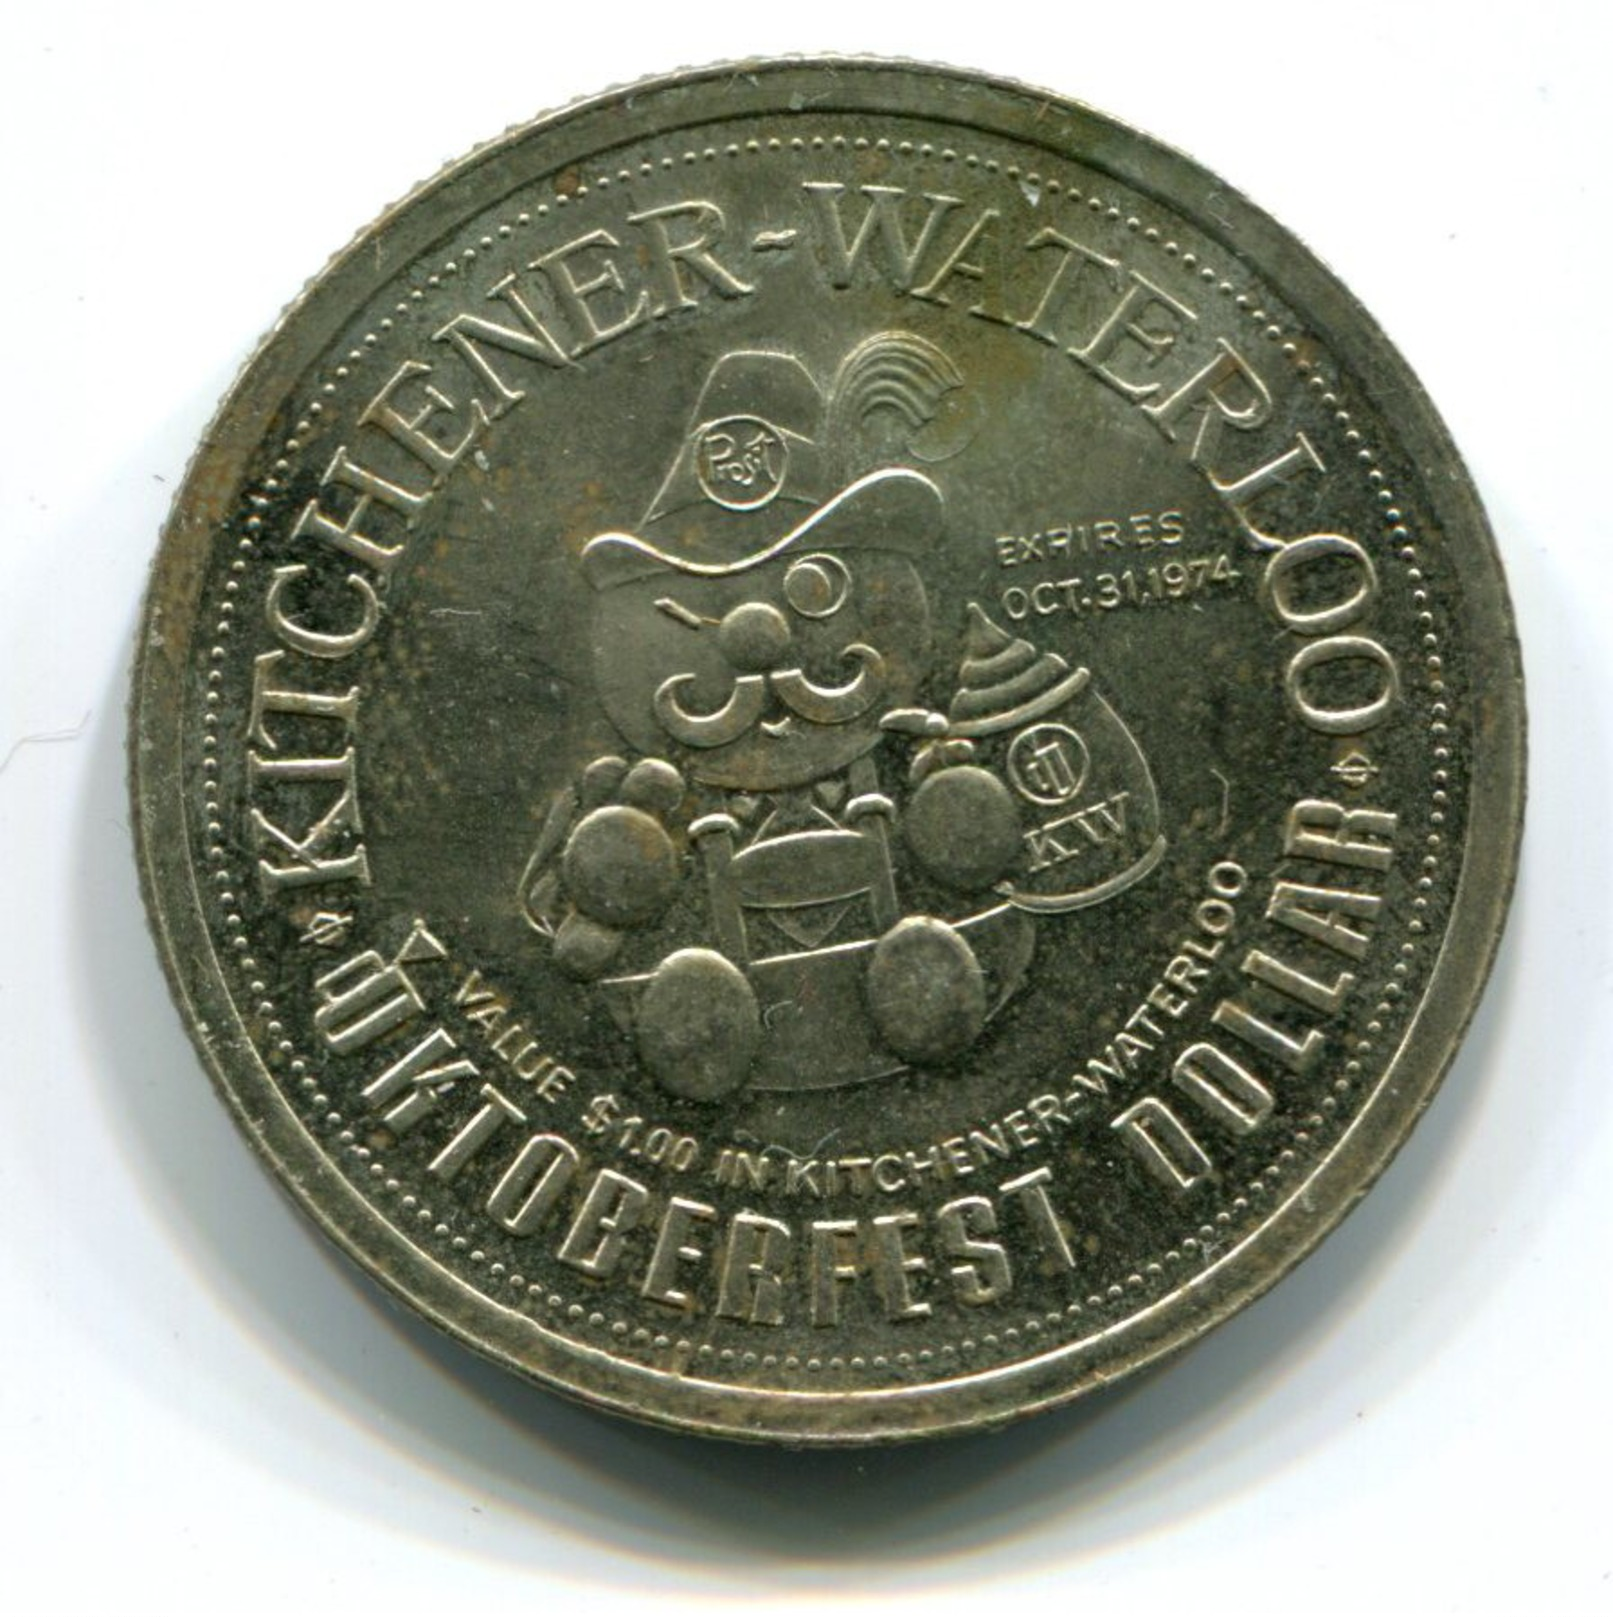 1974 KItchener-Waterloo Canada Oktoberfest $1 Token - Monetary /of Necessity